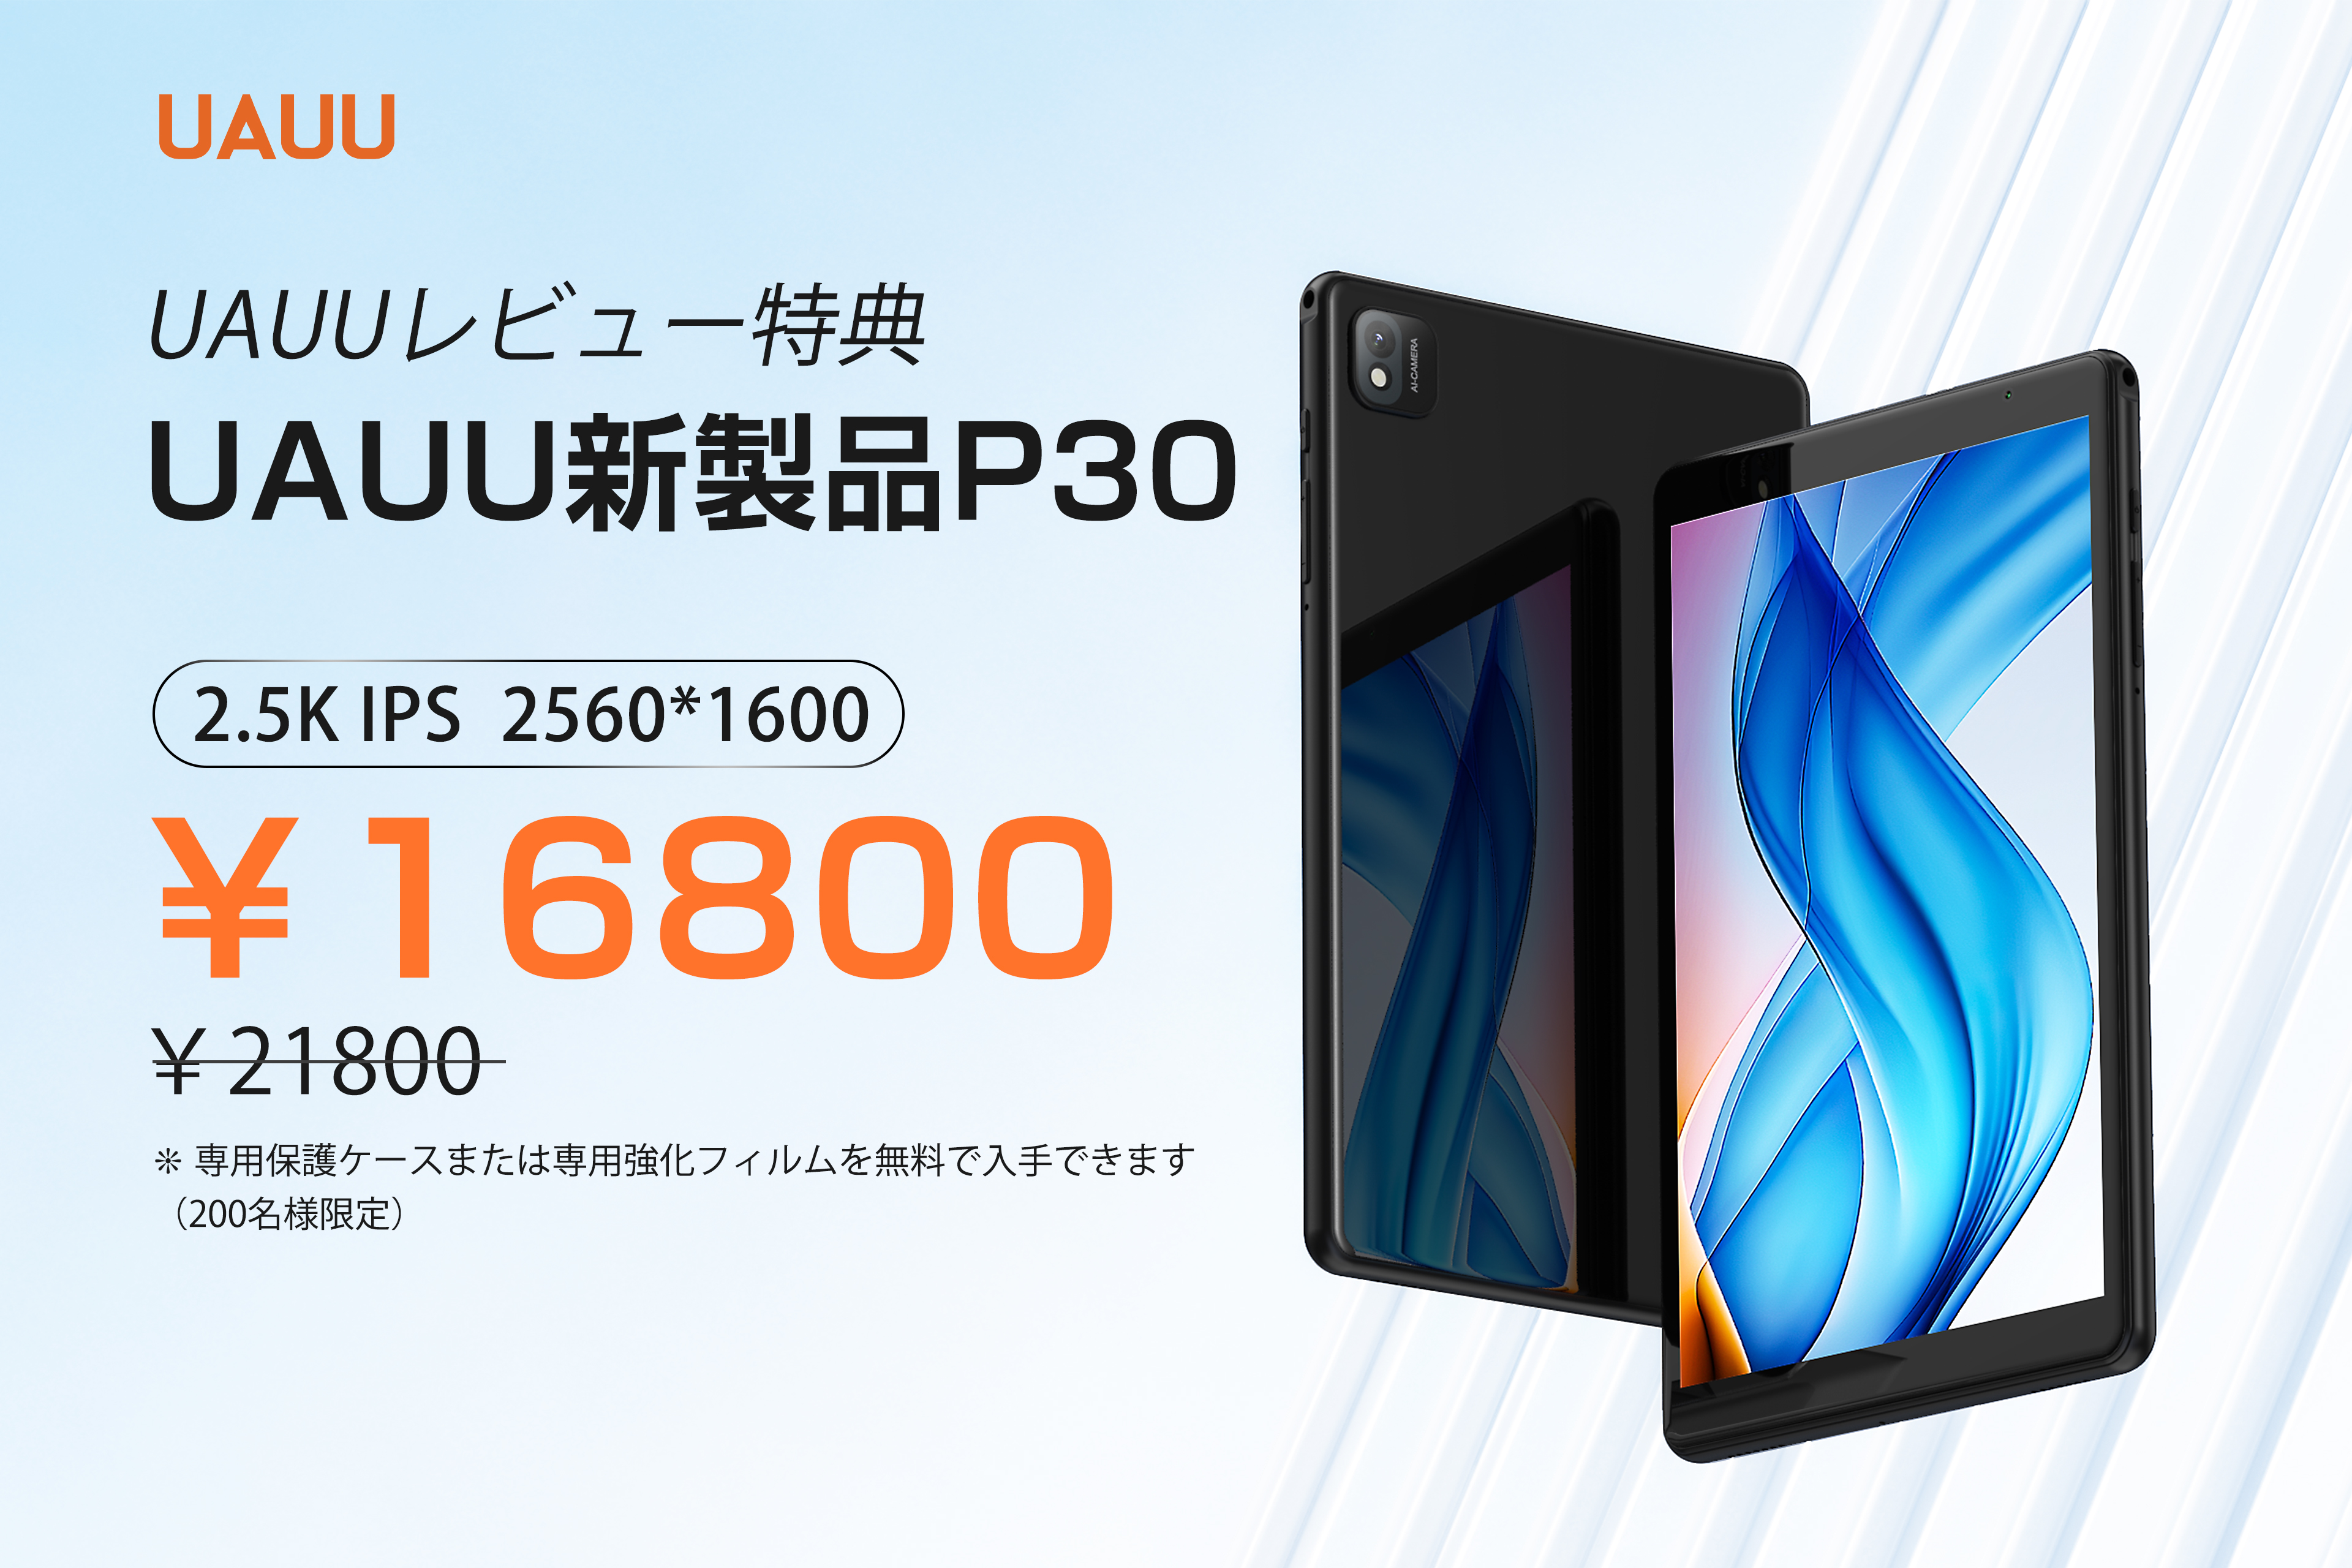 ユアユー P30タブレット8.4インチ 8コア2.5K IPS 2560*160